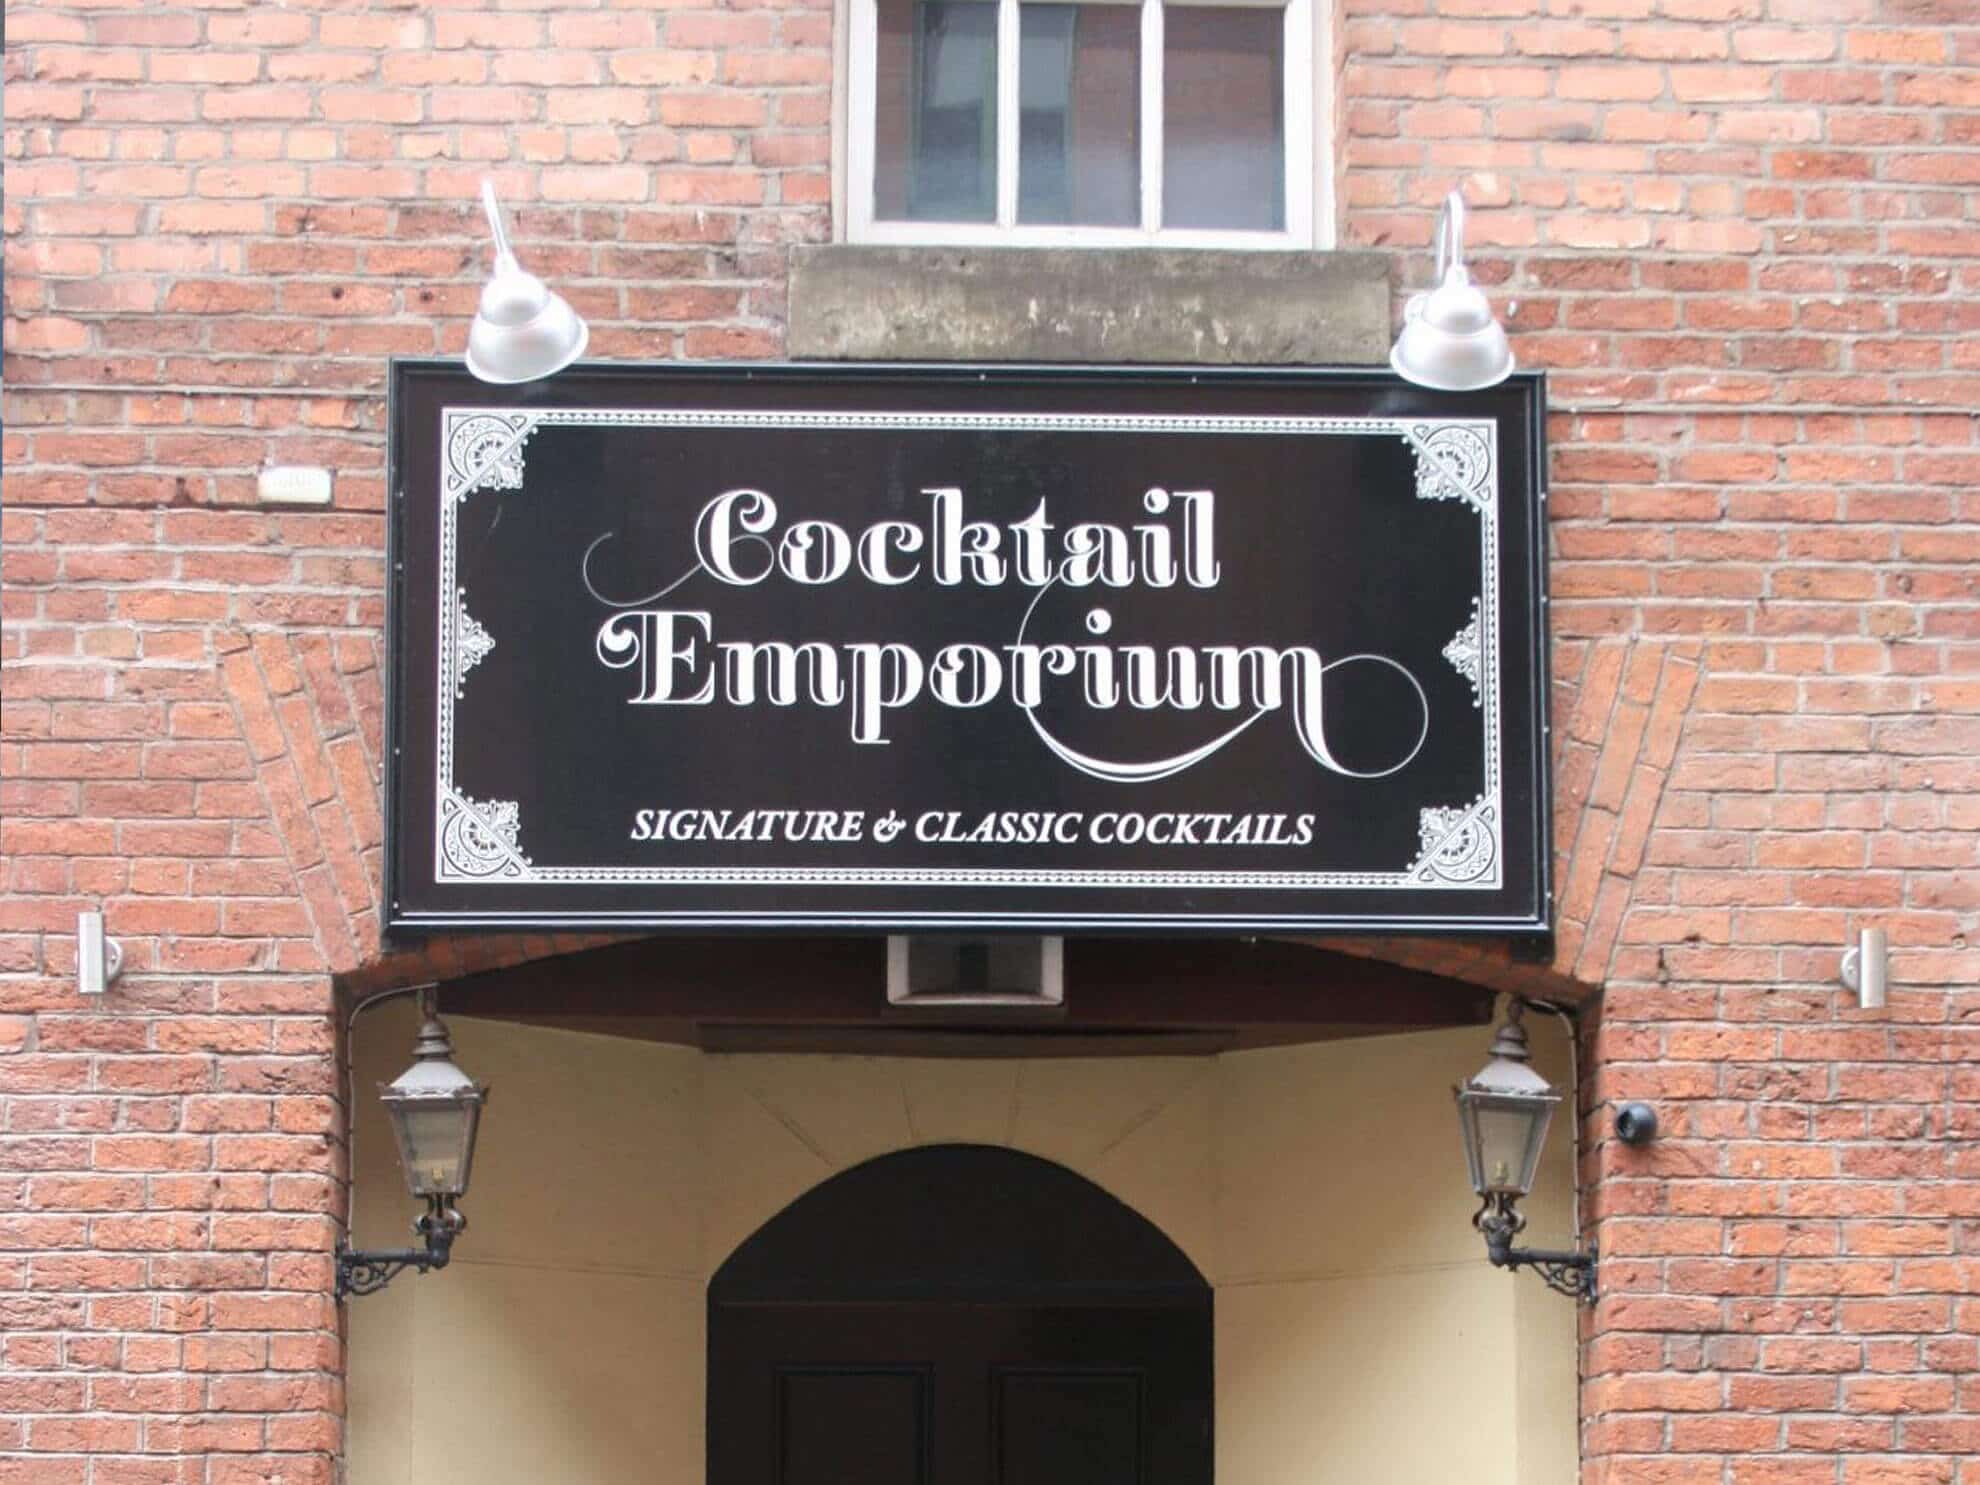 Loftys Cocktail Emporium sign